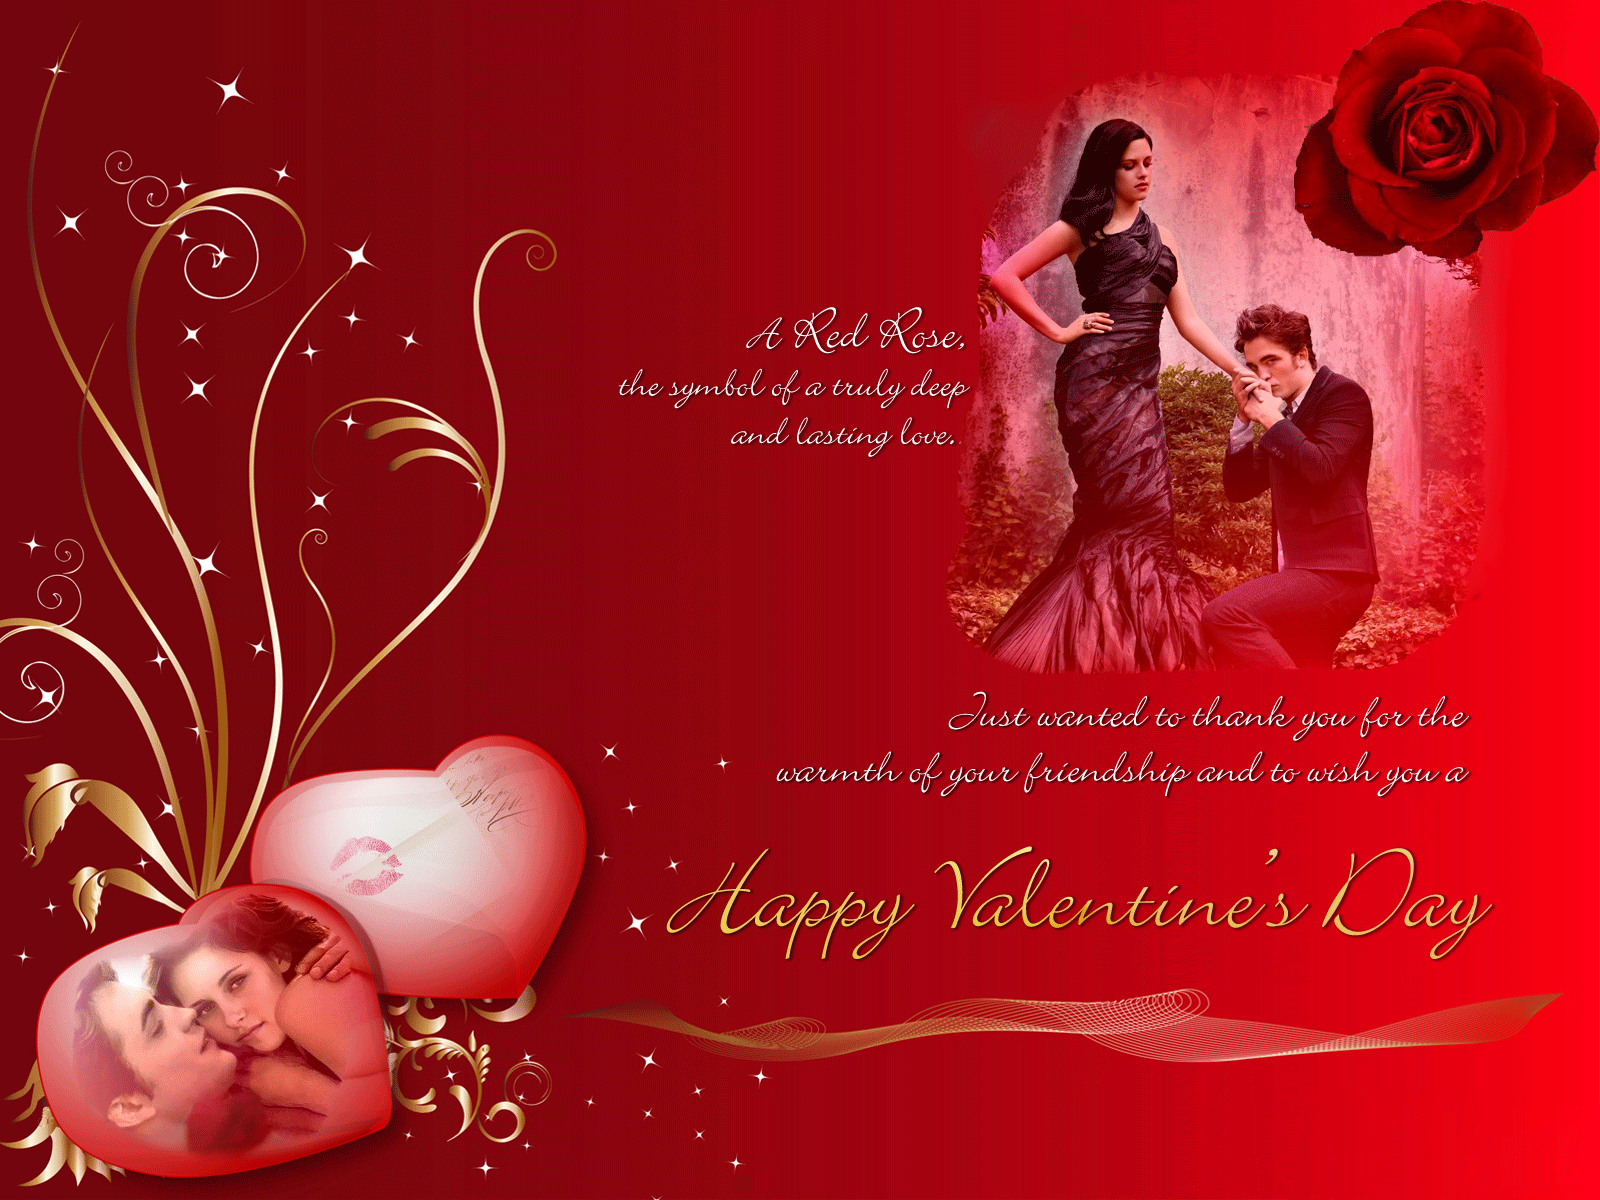 Hãy trao nhau những lời chúc Valentine ngọt ngào nhất để luôn thấy tình yêu rực cháy